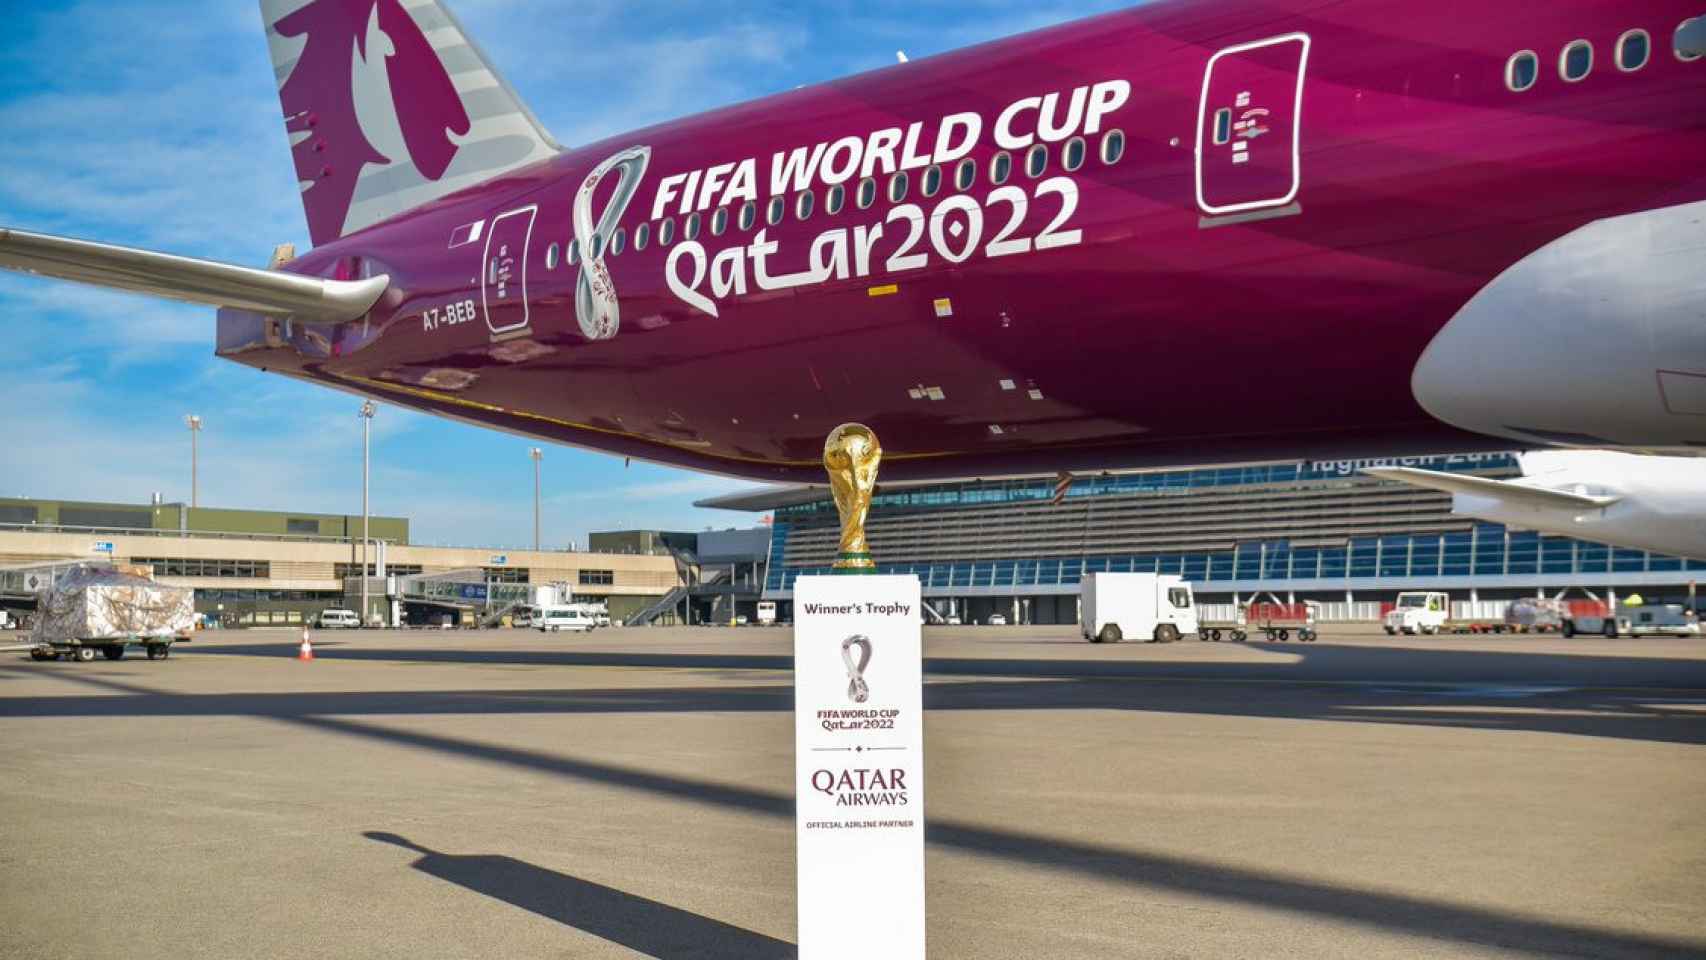 Una imagen de la Copa del Mundo con el patrocinador Qatar Airways